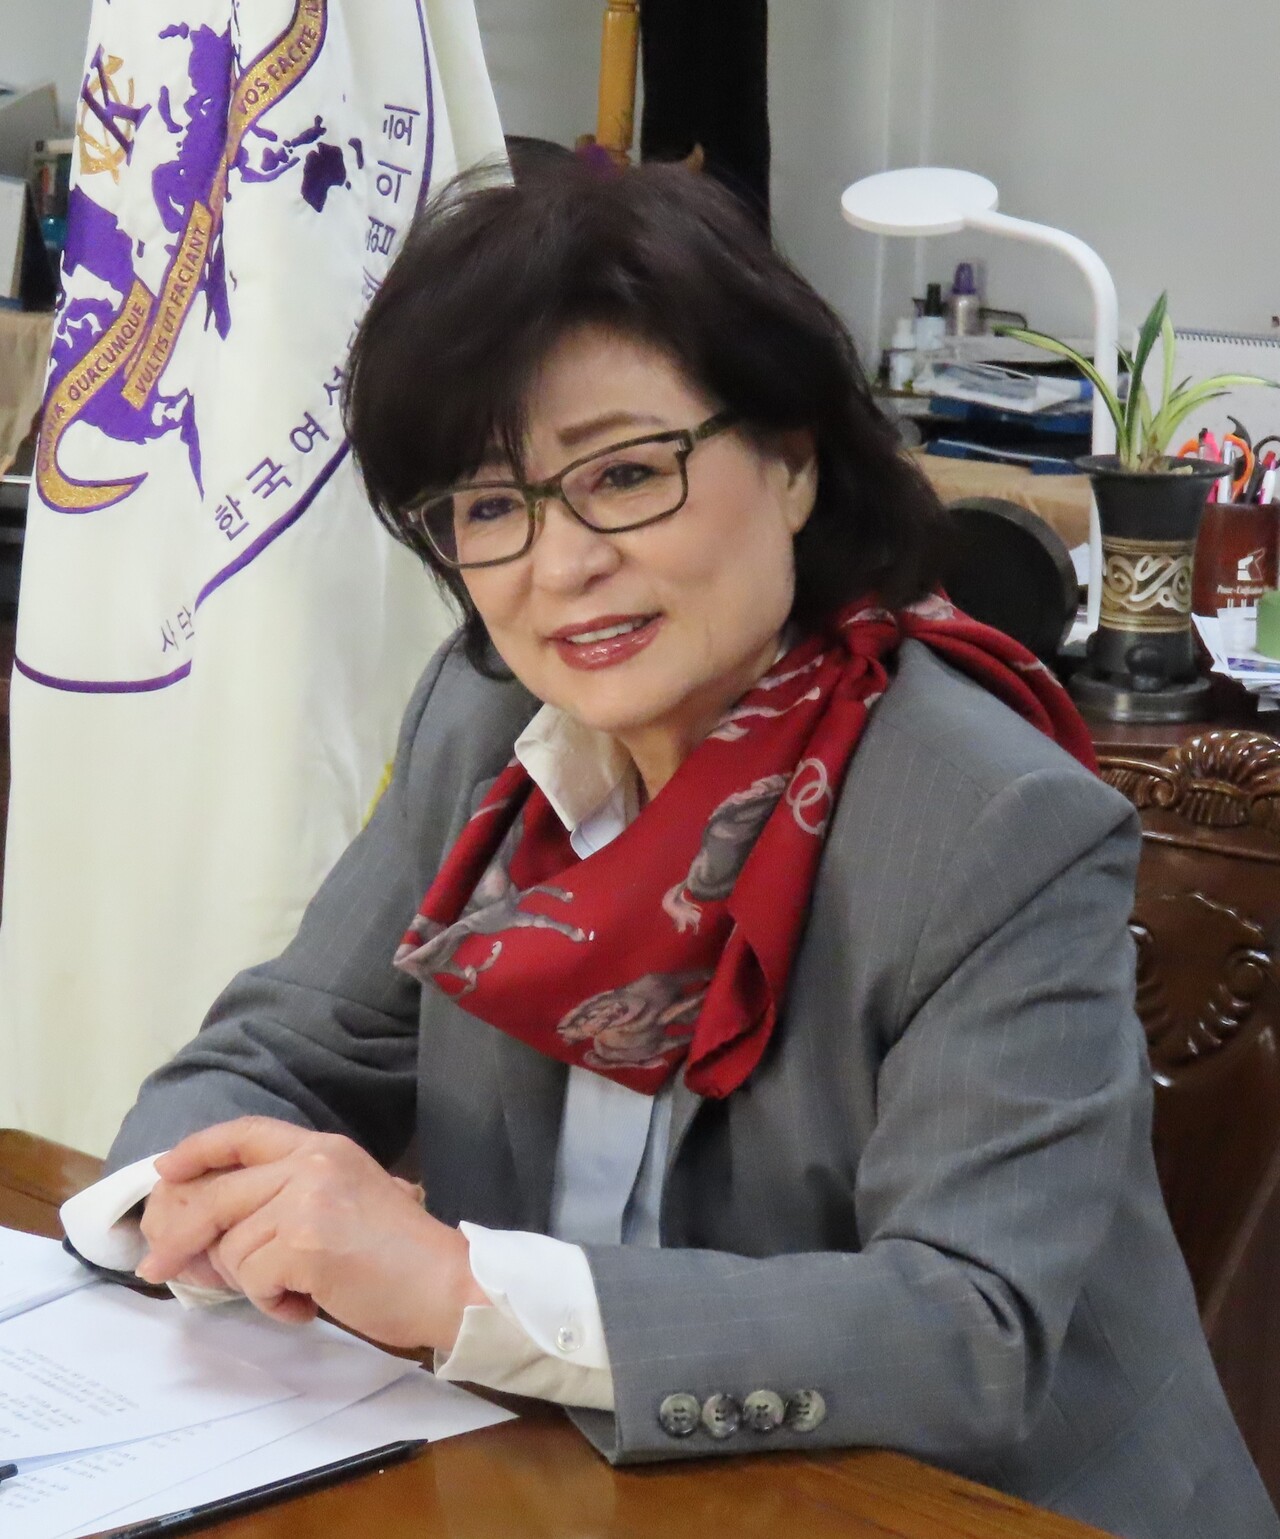 허명 한국여성단체협의회장은 “여성의 문제는 여성이 앞장서서 해결하기 위해 나서지 않으면 안 된다”고 강조했다.